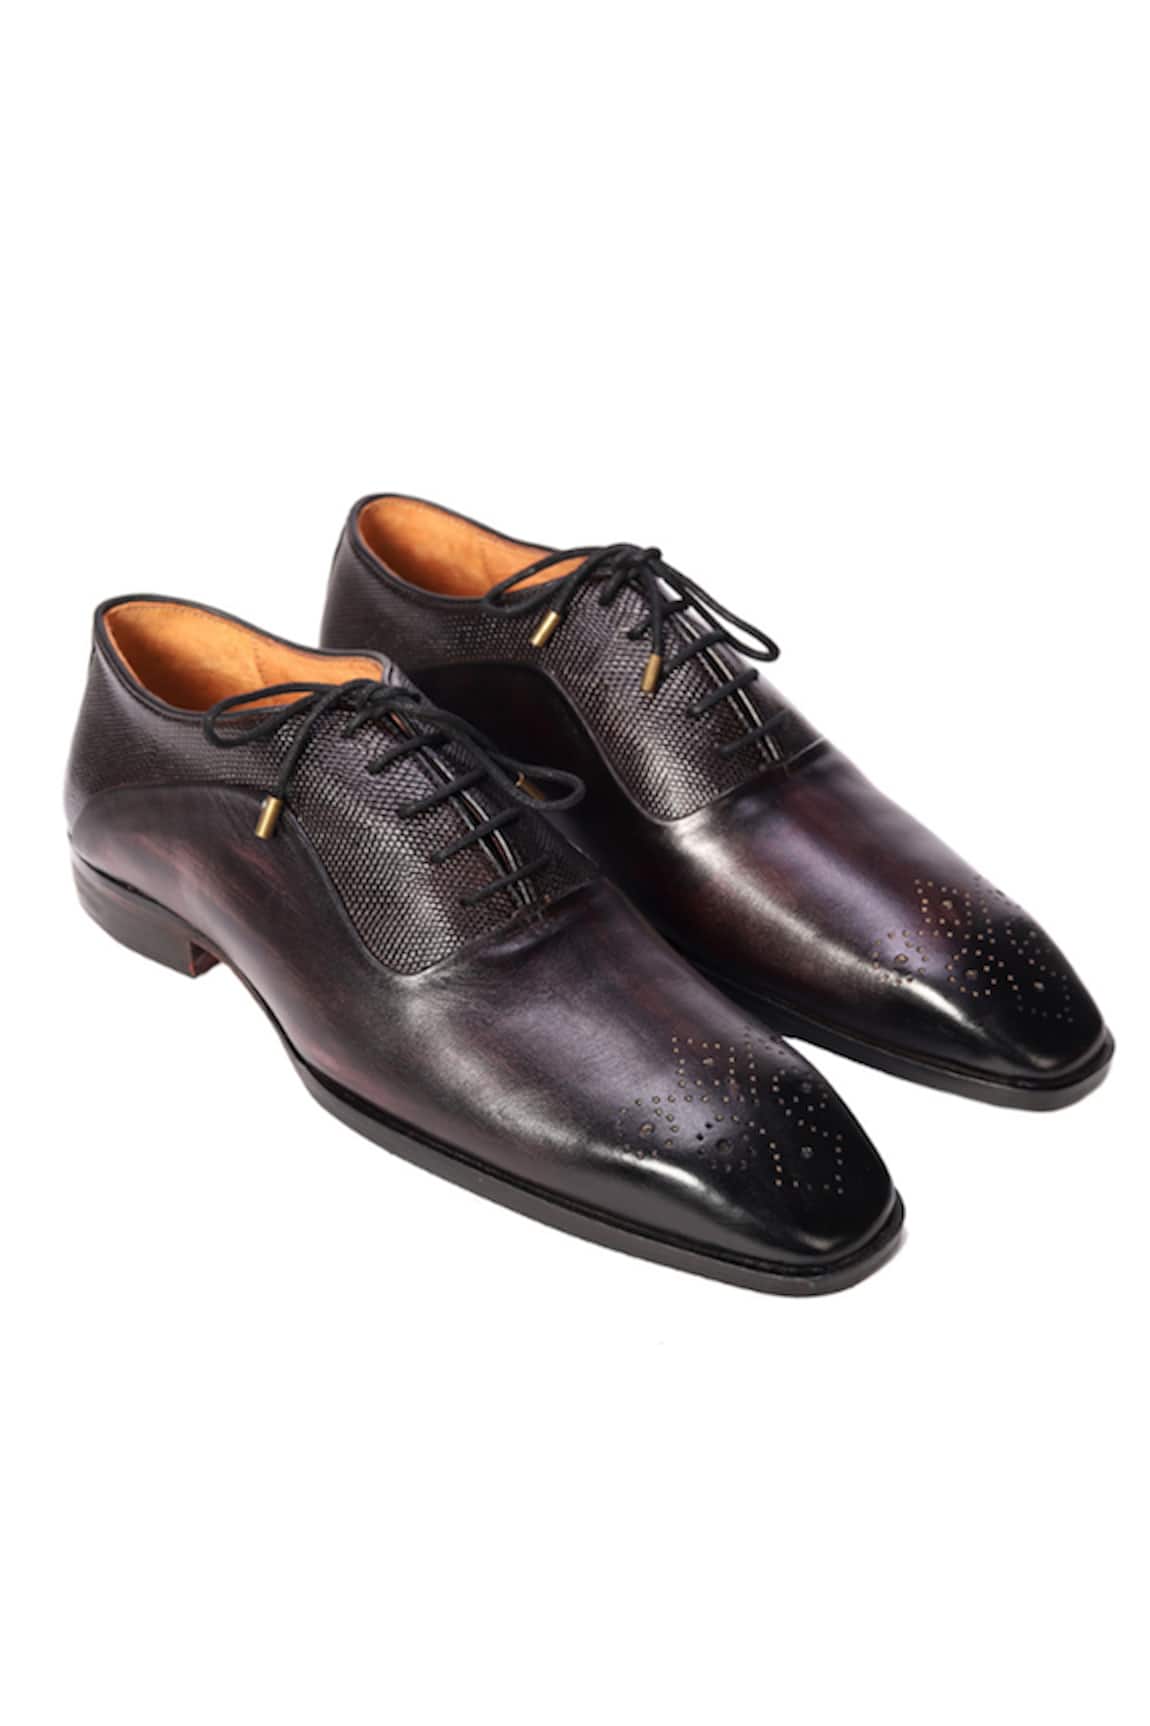 ZUFR Boseman Calfskin Leather Oxford Shoes